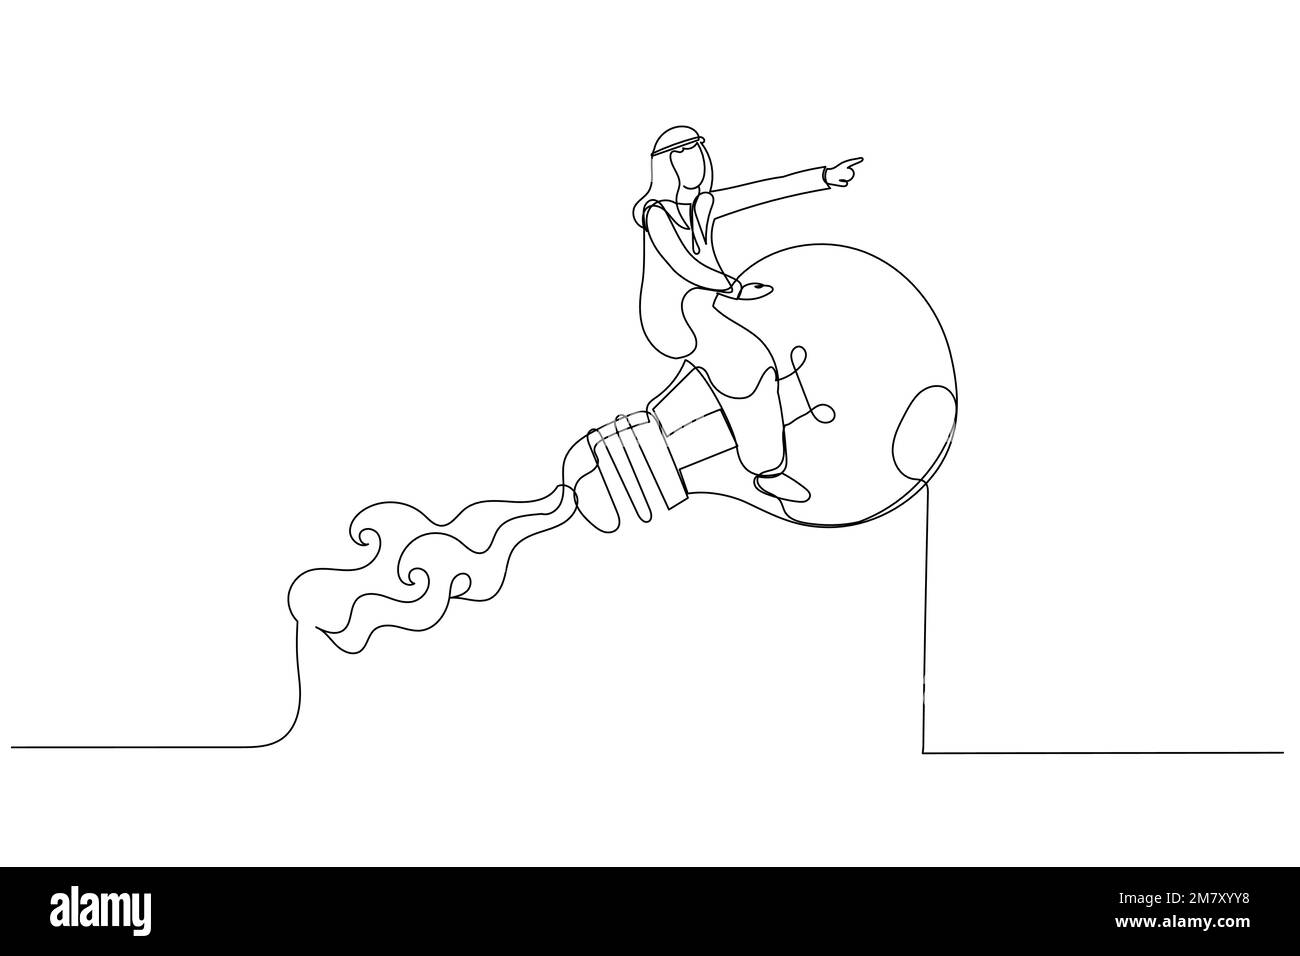 Zeichnung eines arabischen Geschäftsmanns, der mit einer hellen Glühbirne mit Raketenantrieb am Wolkenhimmel reitet. Kreative neue Idee. Einzelne durchgehende Linie Stock Vektor